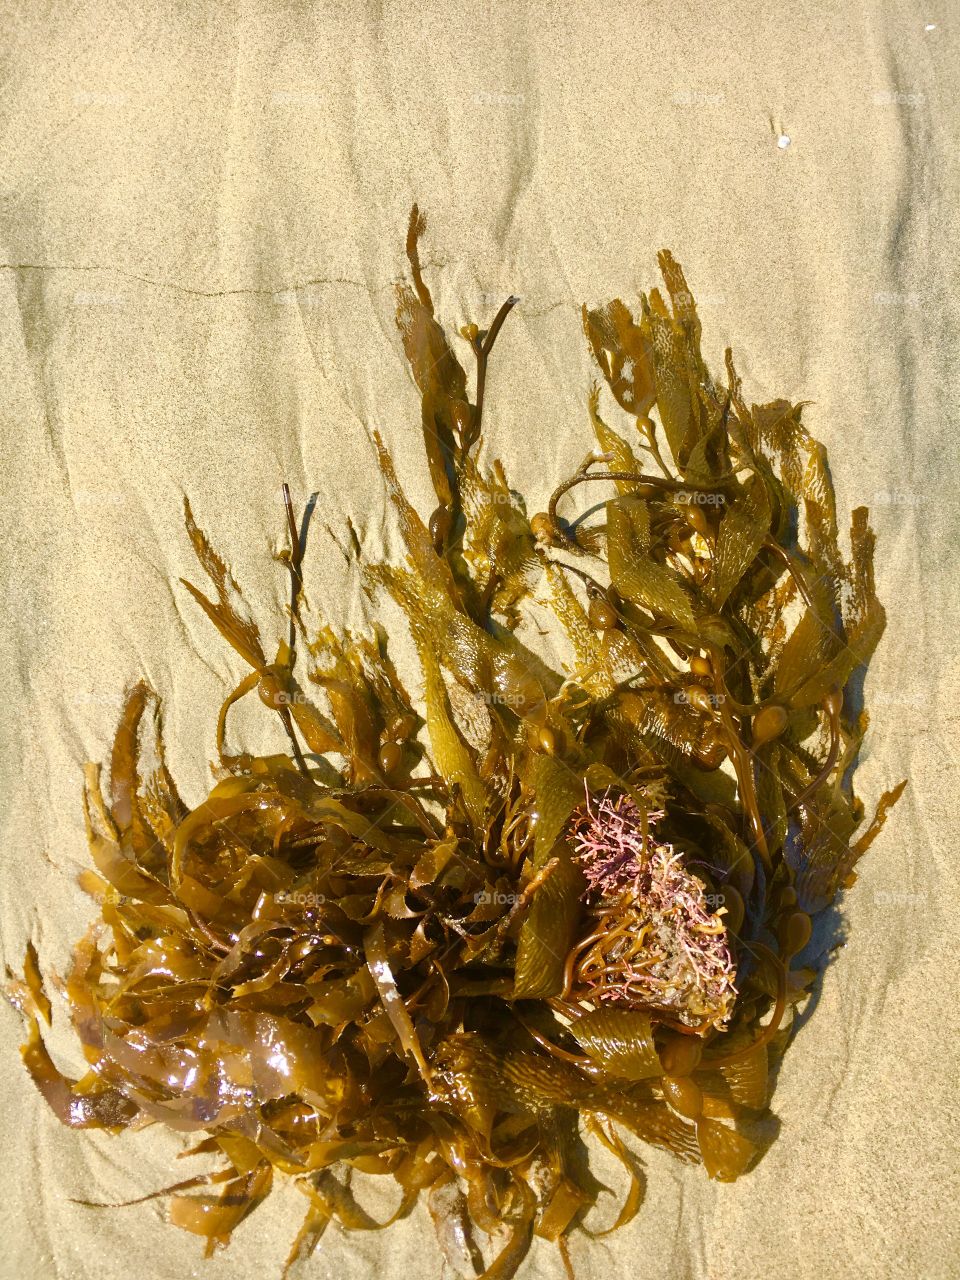 Huntington Beach, CA Kelp from the ocean floor.